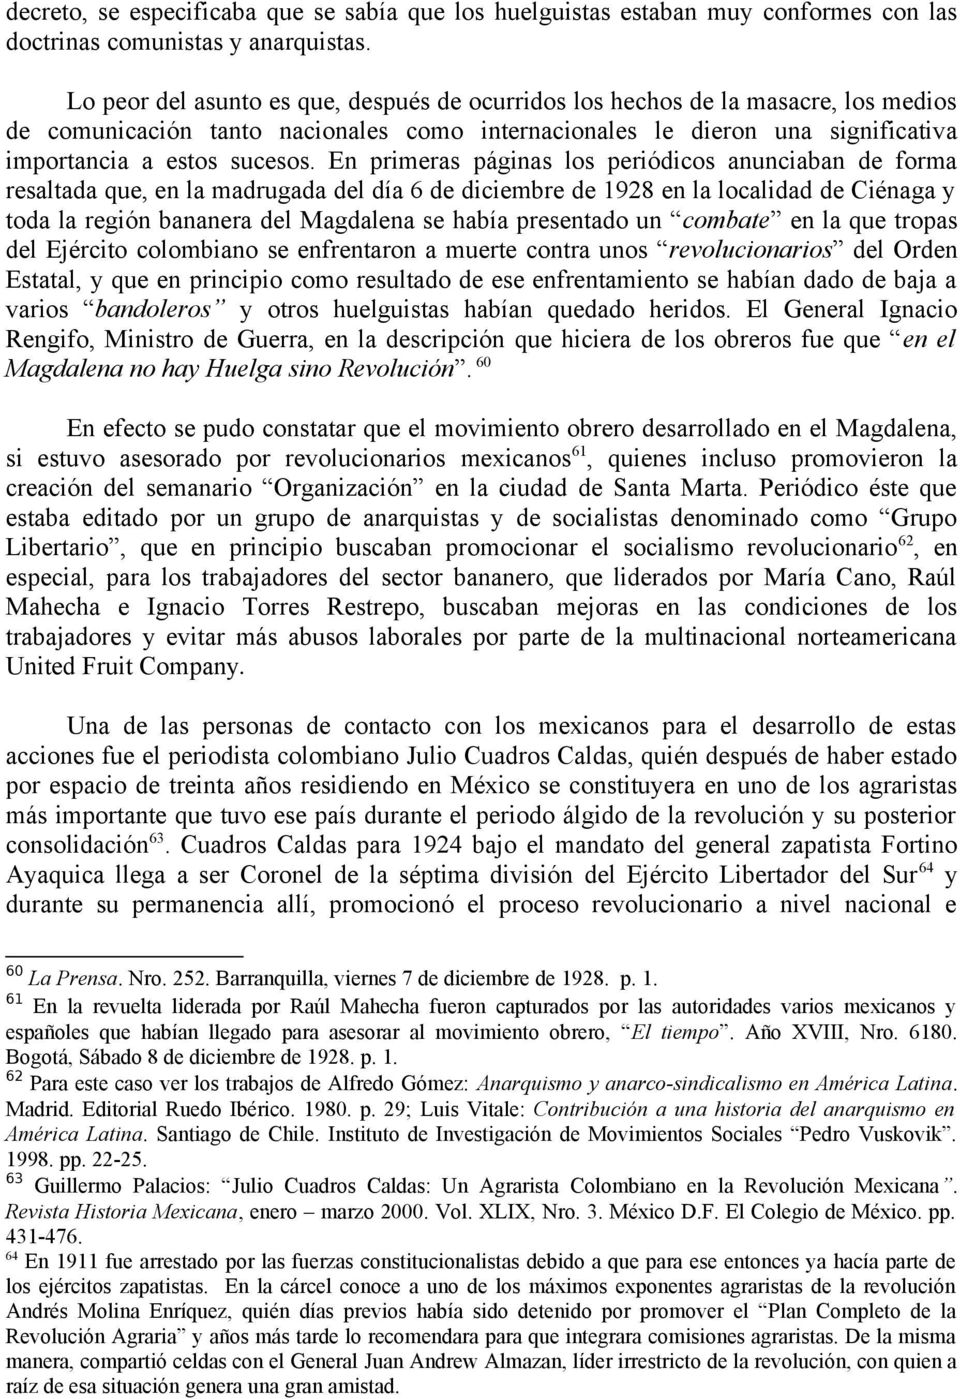 En primeras páginas los periódicos anunciaban de forma resaltada que, en la madrugada del día 6 de diciembre de 1928 en la localidad de Ciénaga y toda la región bananera del Magdalena se había